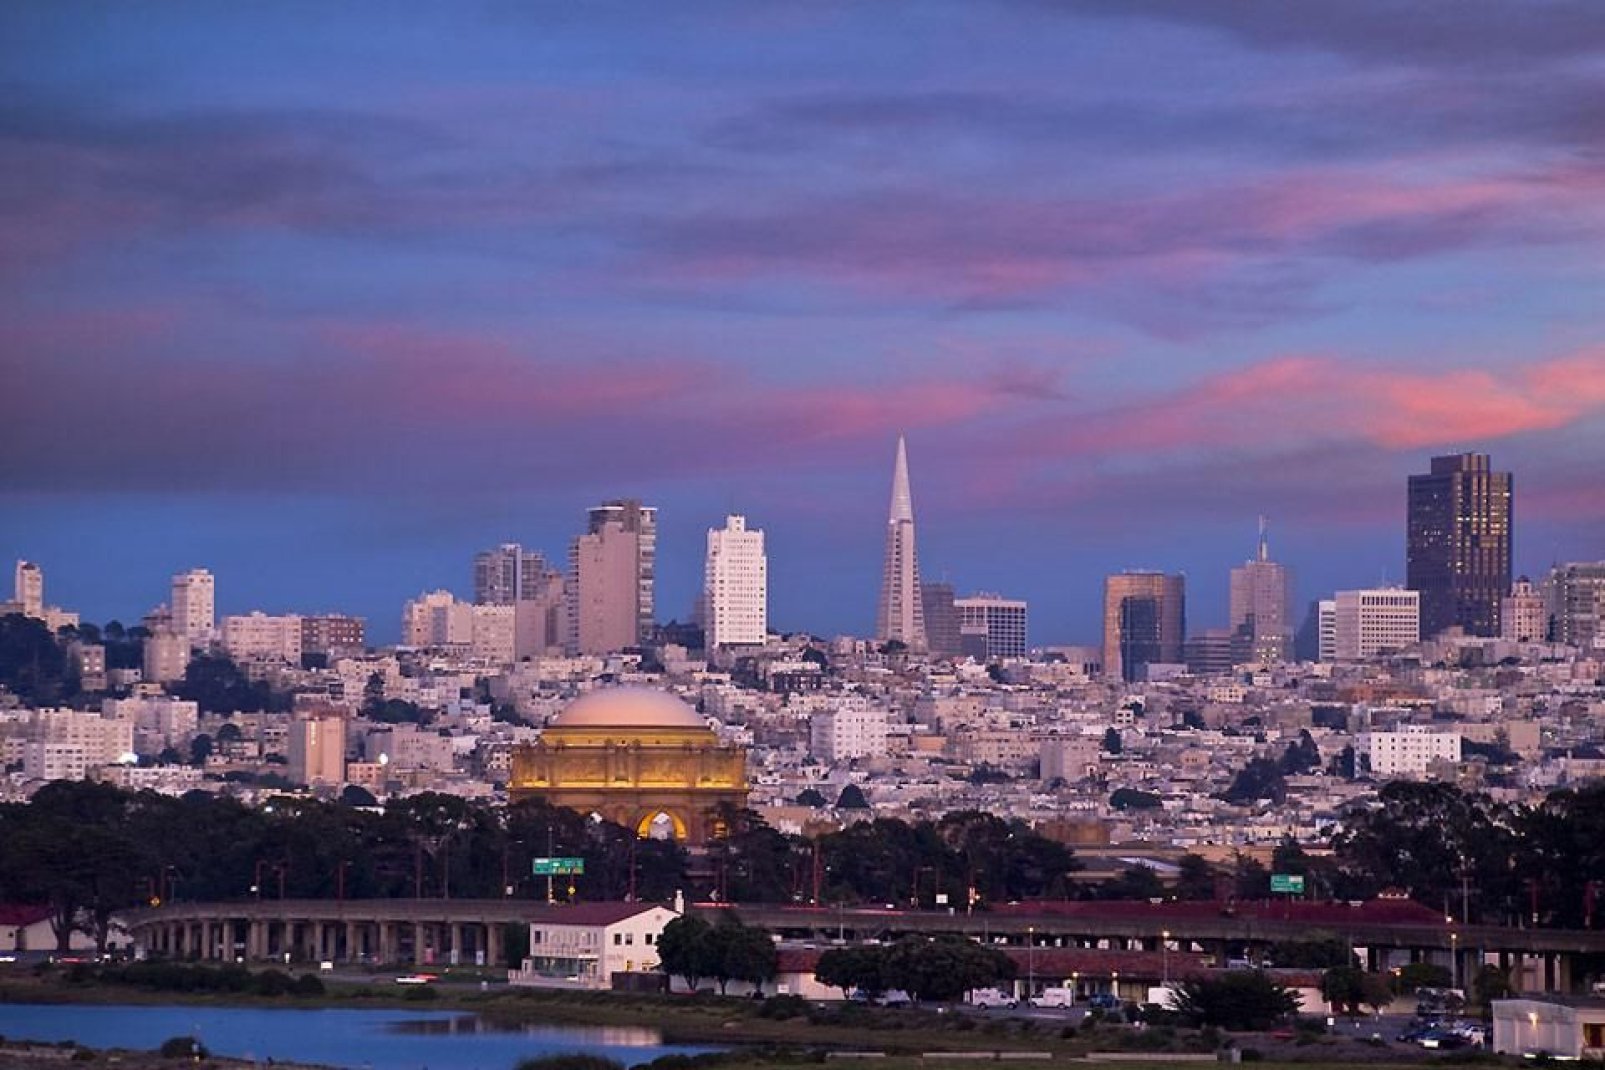 Foto panoramica della città di notte. Sullo sfondo, il duomo dorato dell'Exploratorium (Exploratorium Golden Dome).